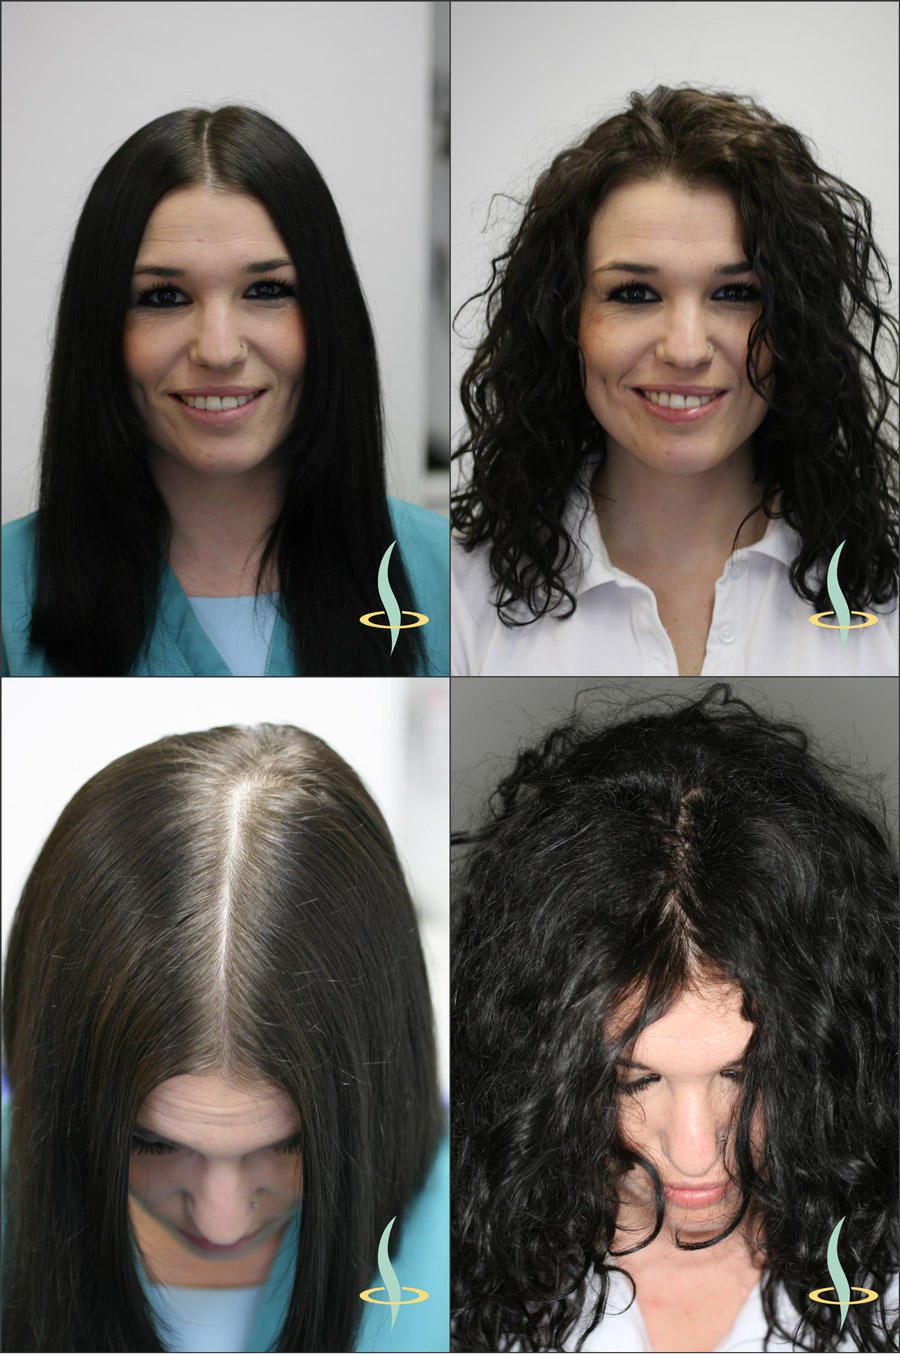 Figura 2: Efecto óptico de la visibilidad del cuero cabelludo en cabello liso (izquierda) y rizado (derecha). (Fuente: representación propia)